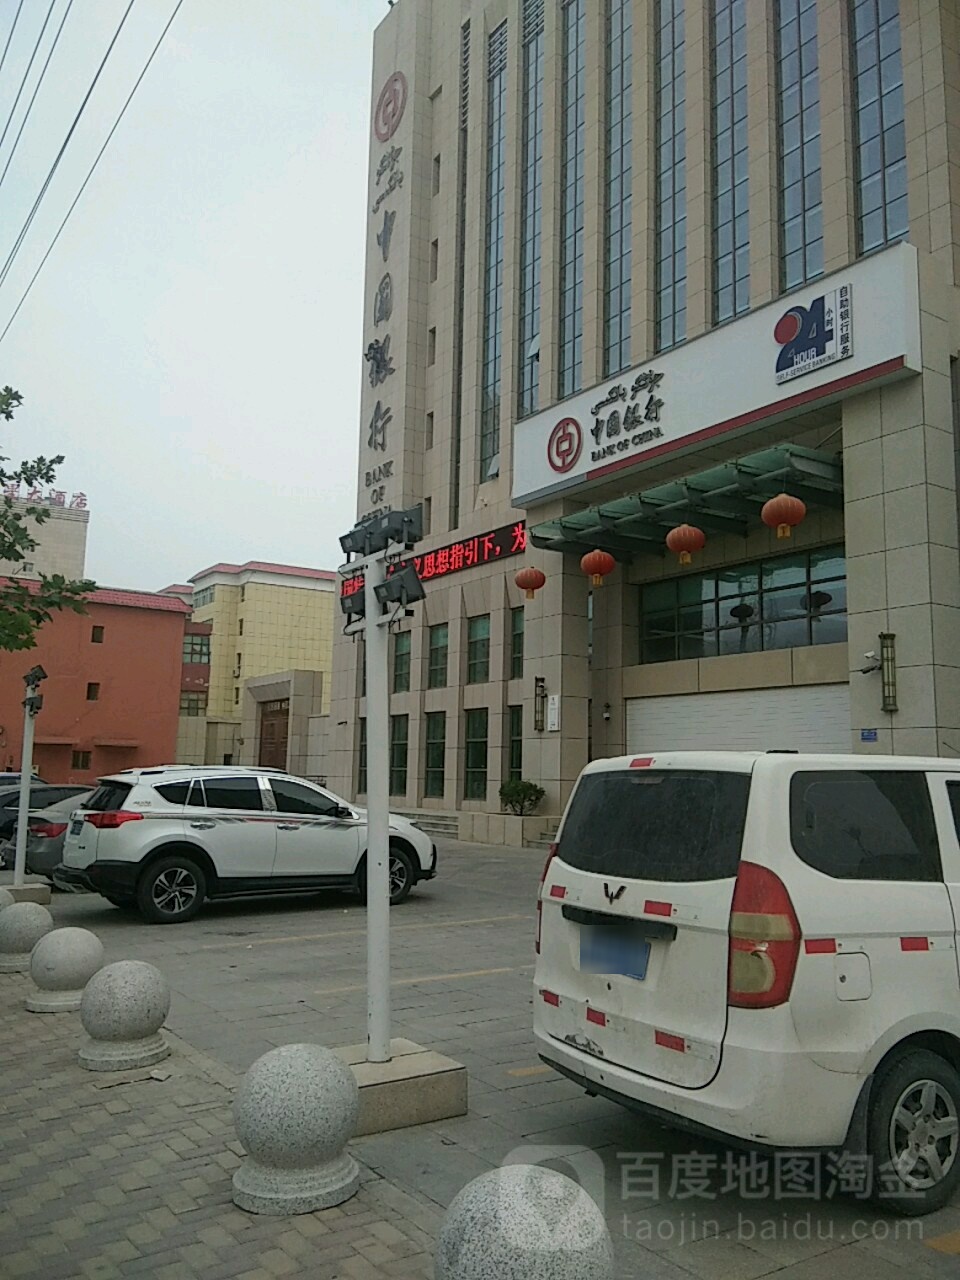 中国银行24小时自助银行服务(克孜勒苏柯尔克孜自治州分行)